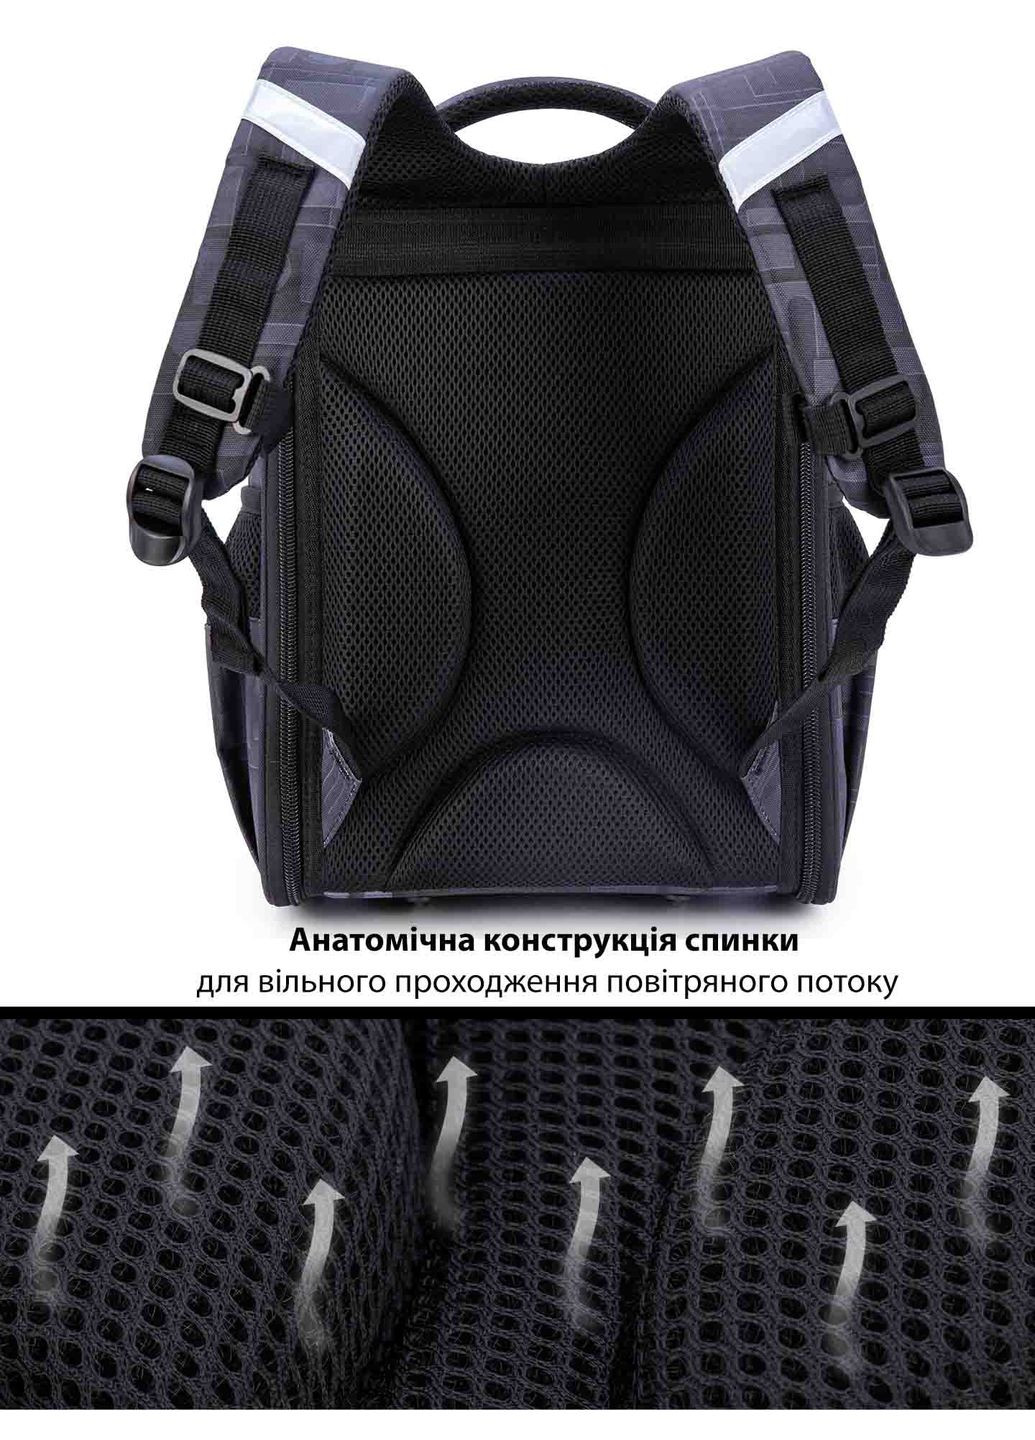 Ортопедический рюкзак с пеналом и мешком для мальчика для первоклассника (Full 300-4) School Standard (293815092)